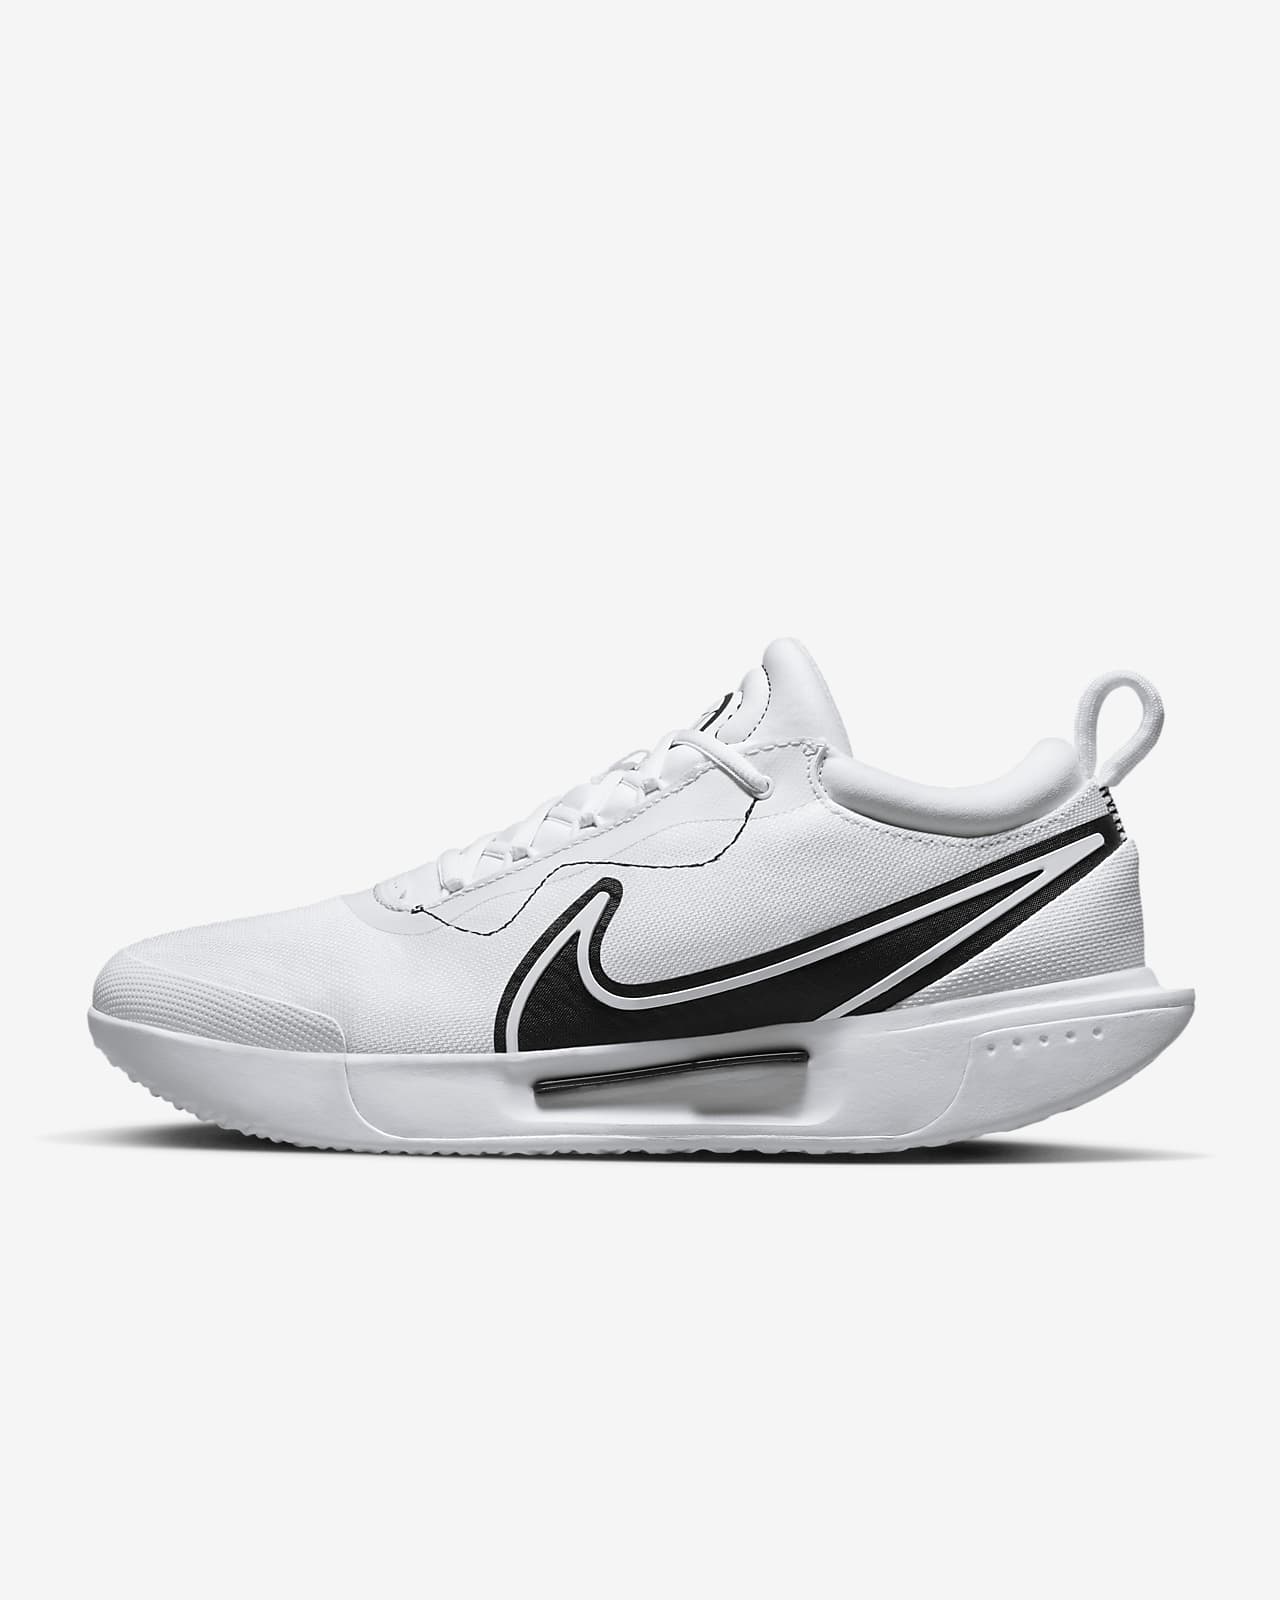 NikeCourt Zoom Pro Men's Hard Court Tennis Shoes